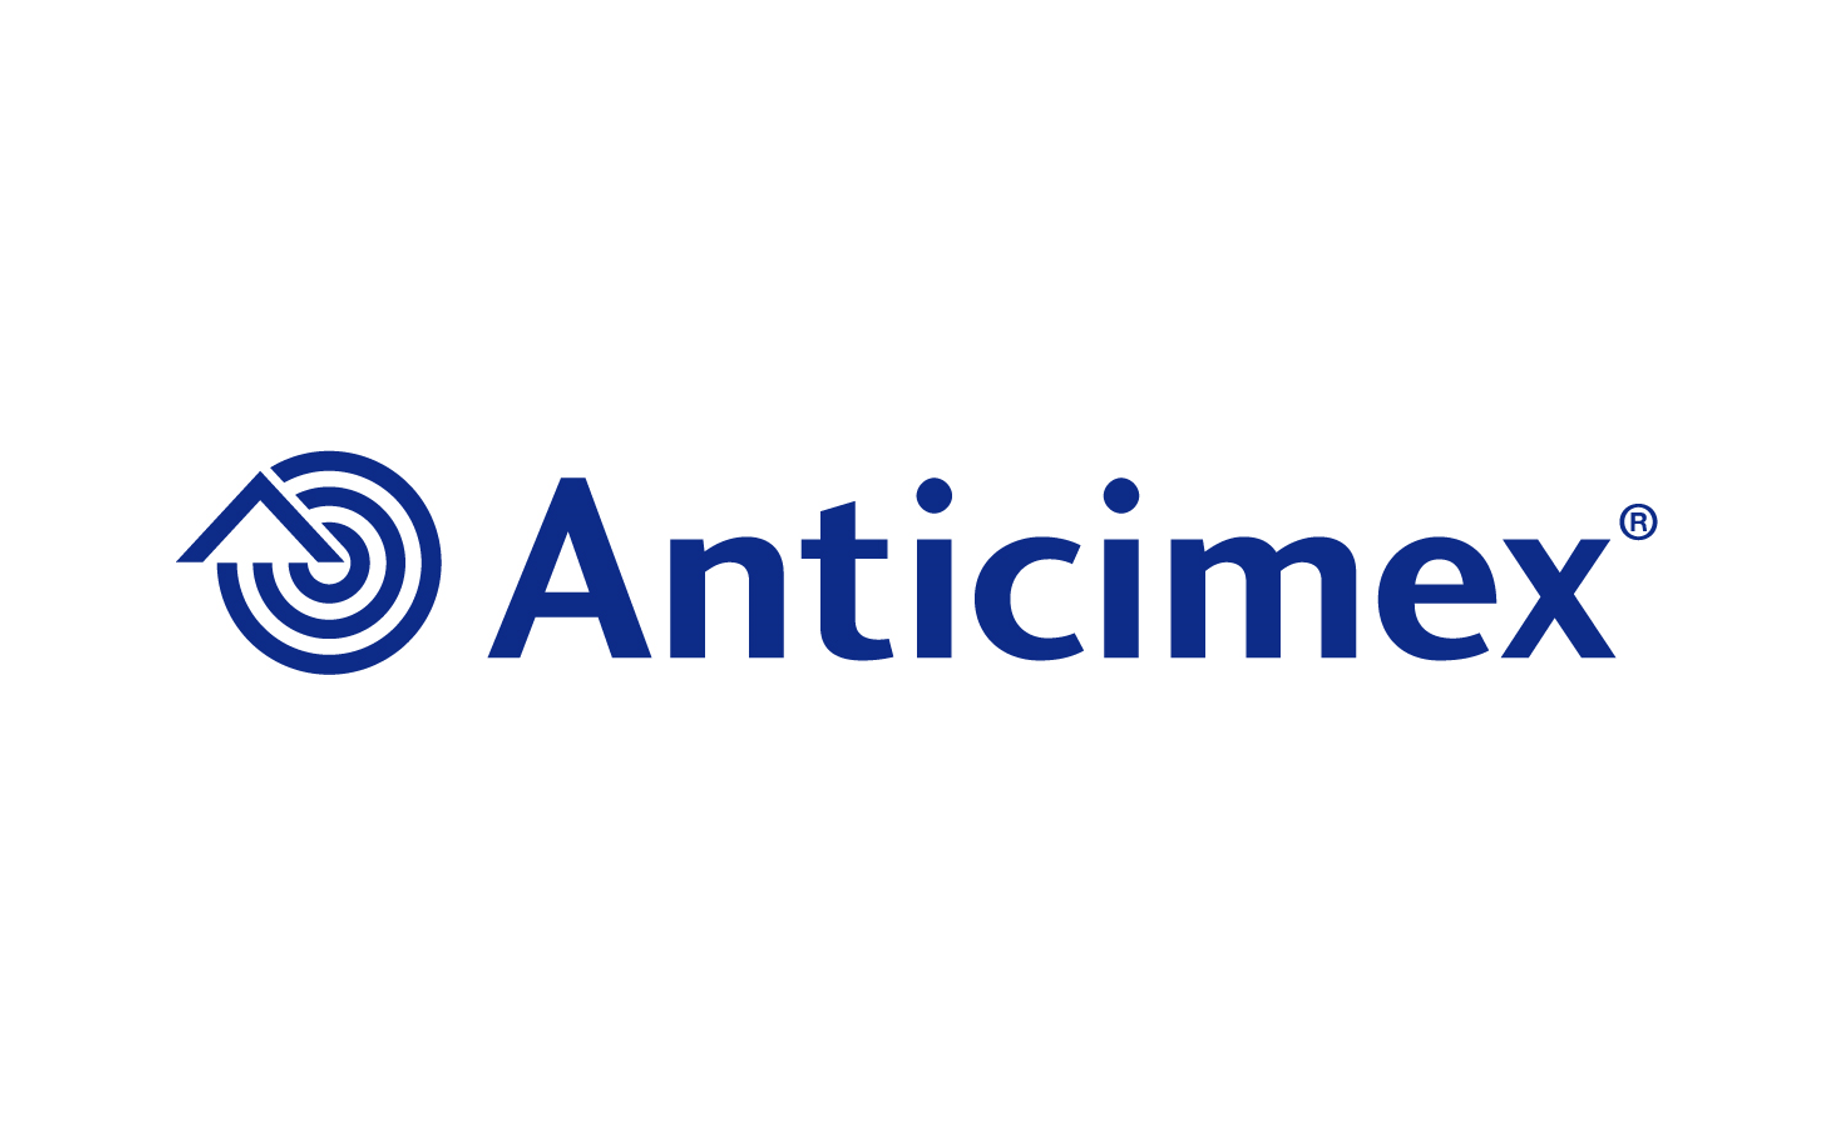 Anticimex Portugal